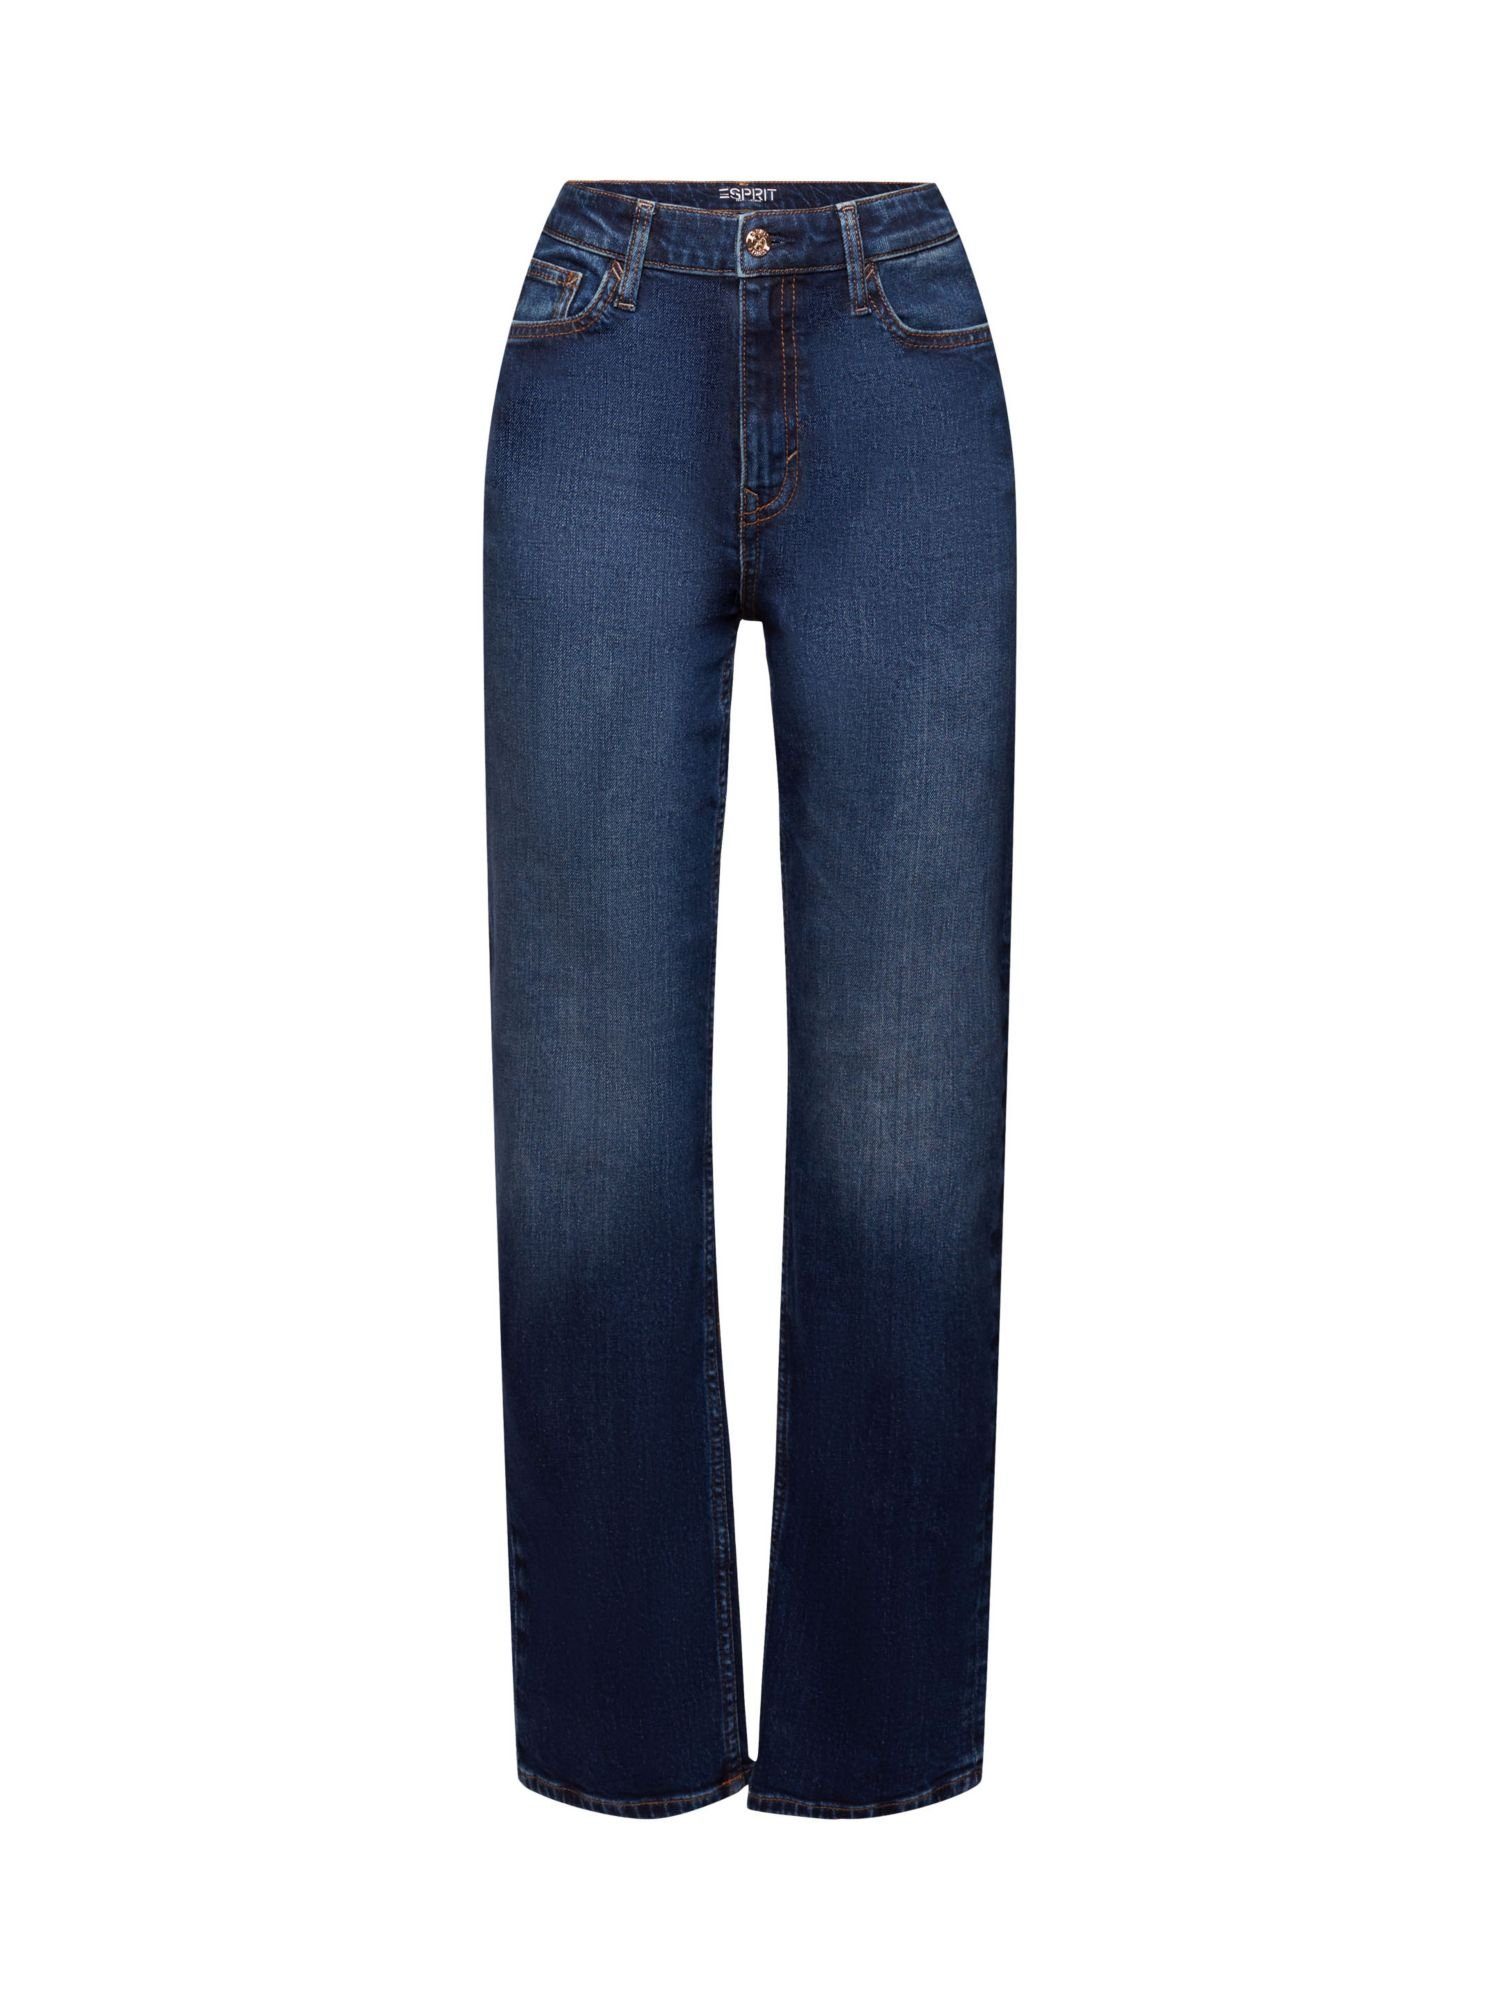 Esprit Straight-Jeans Retro-Jeans mit gerader Passform und hohem Bund | Straight-Fit Jeans